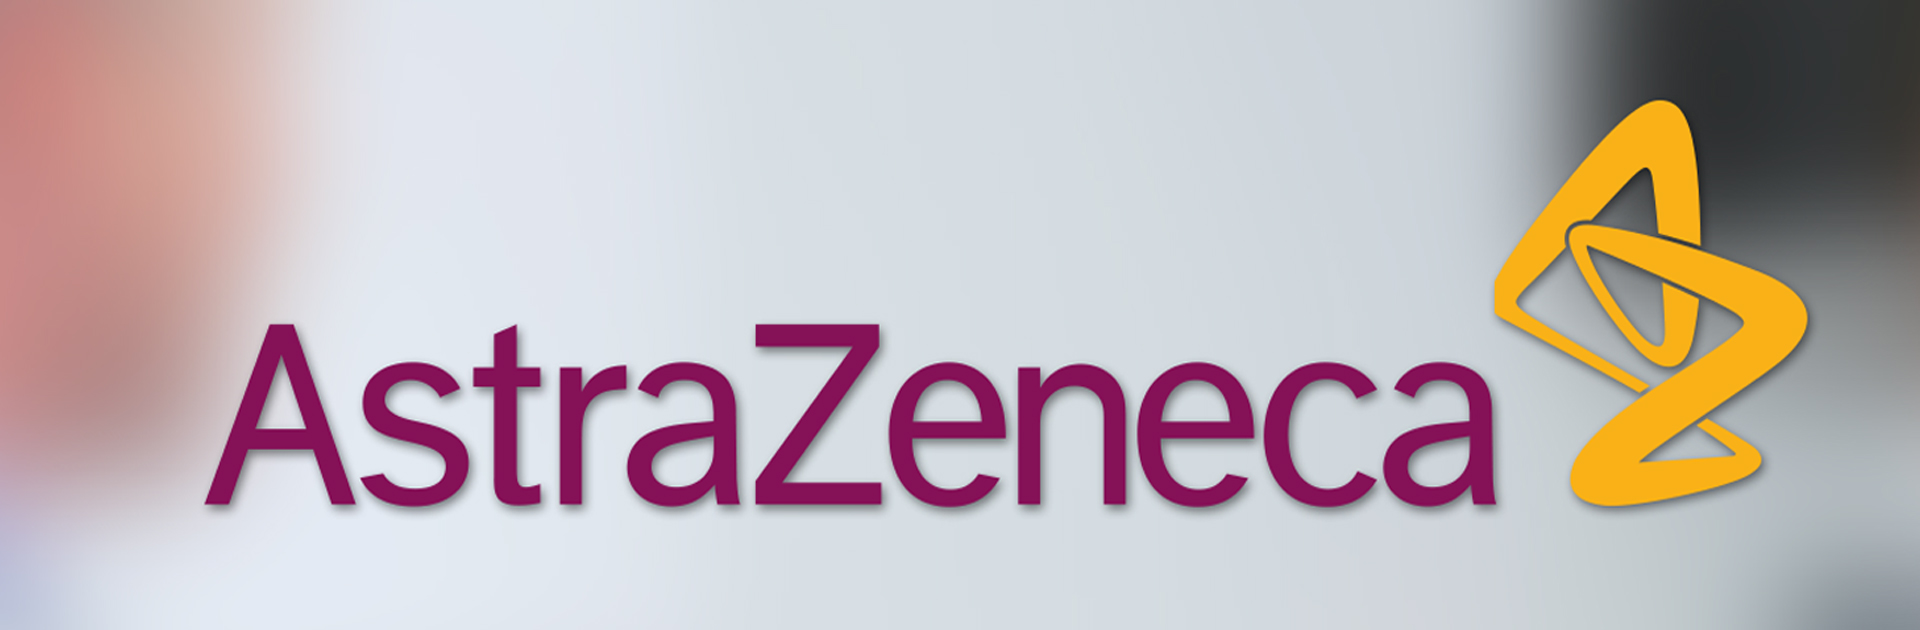 Medyasoft Digital'den AstraZeneca’nın saha operasyonlarına teknolojik dokunuş!